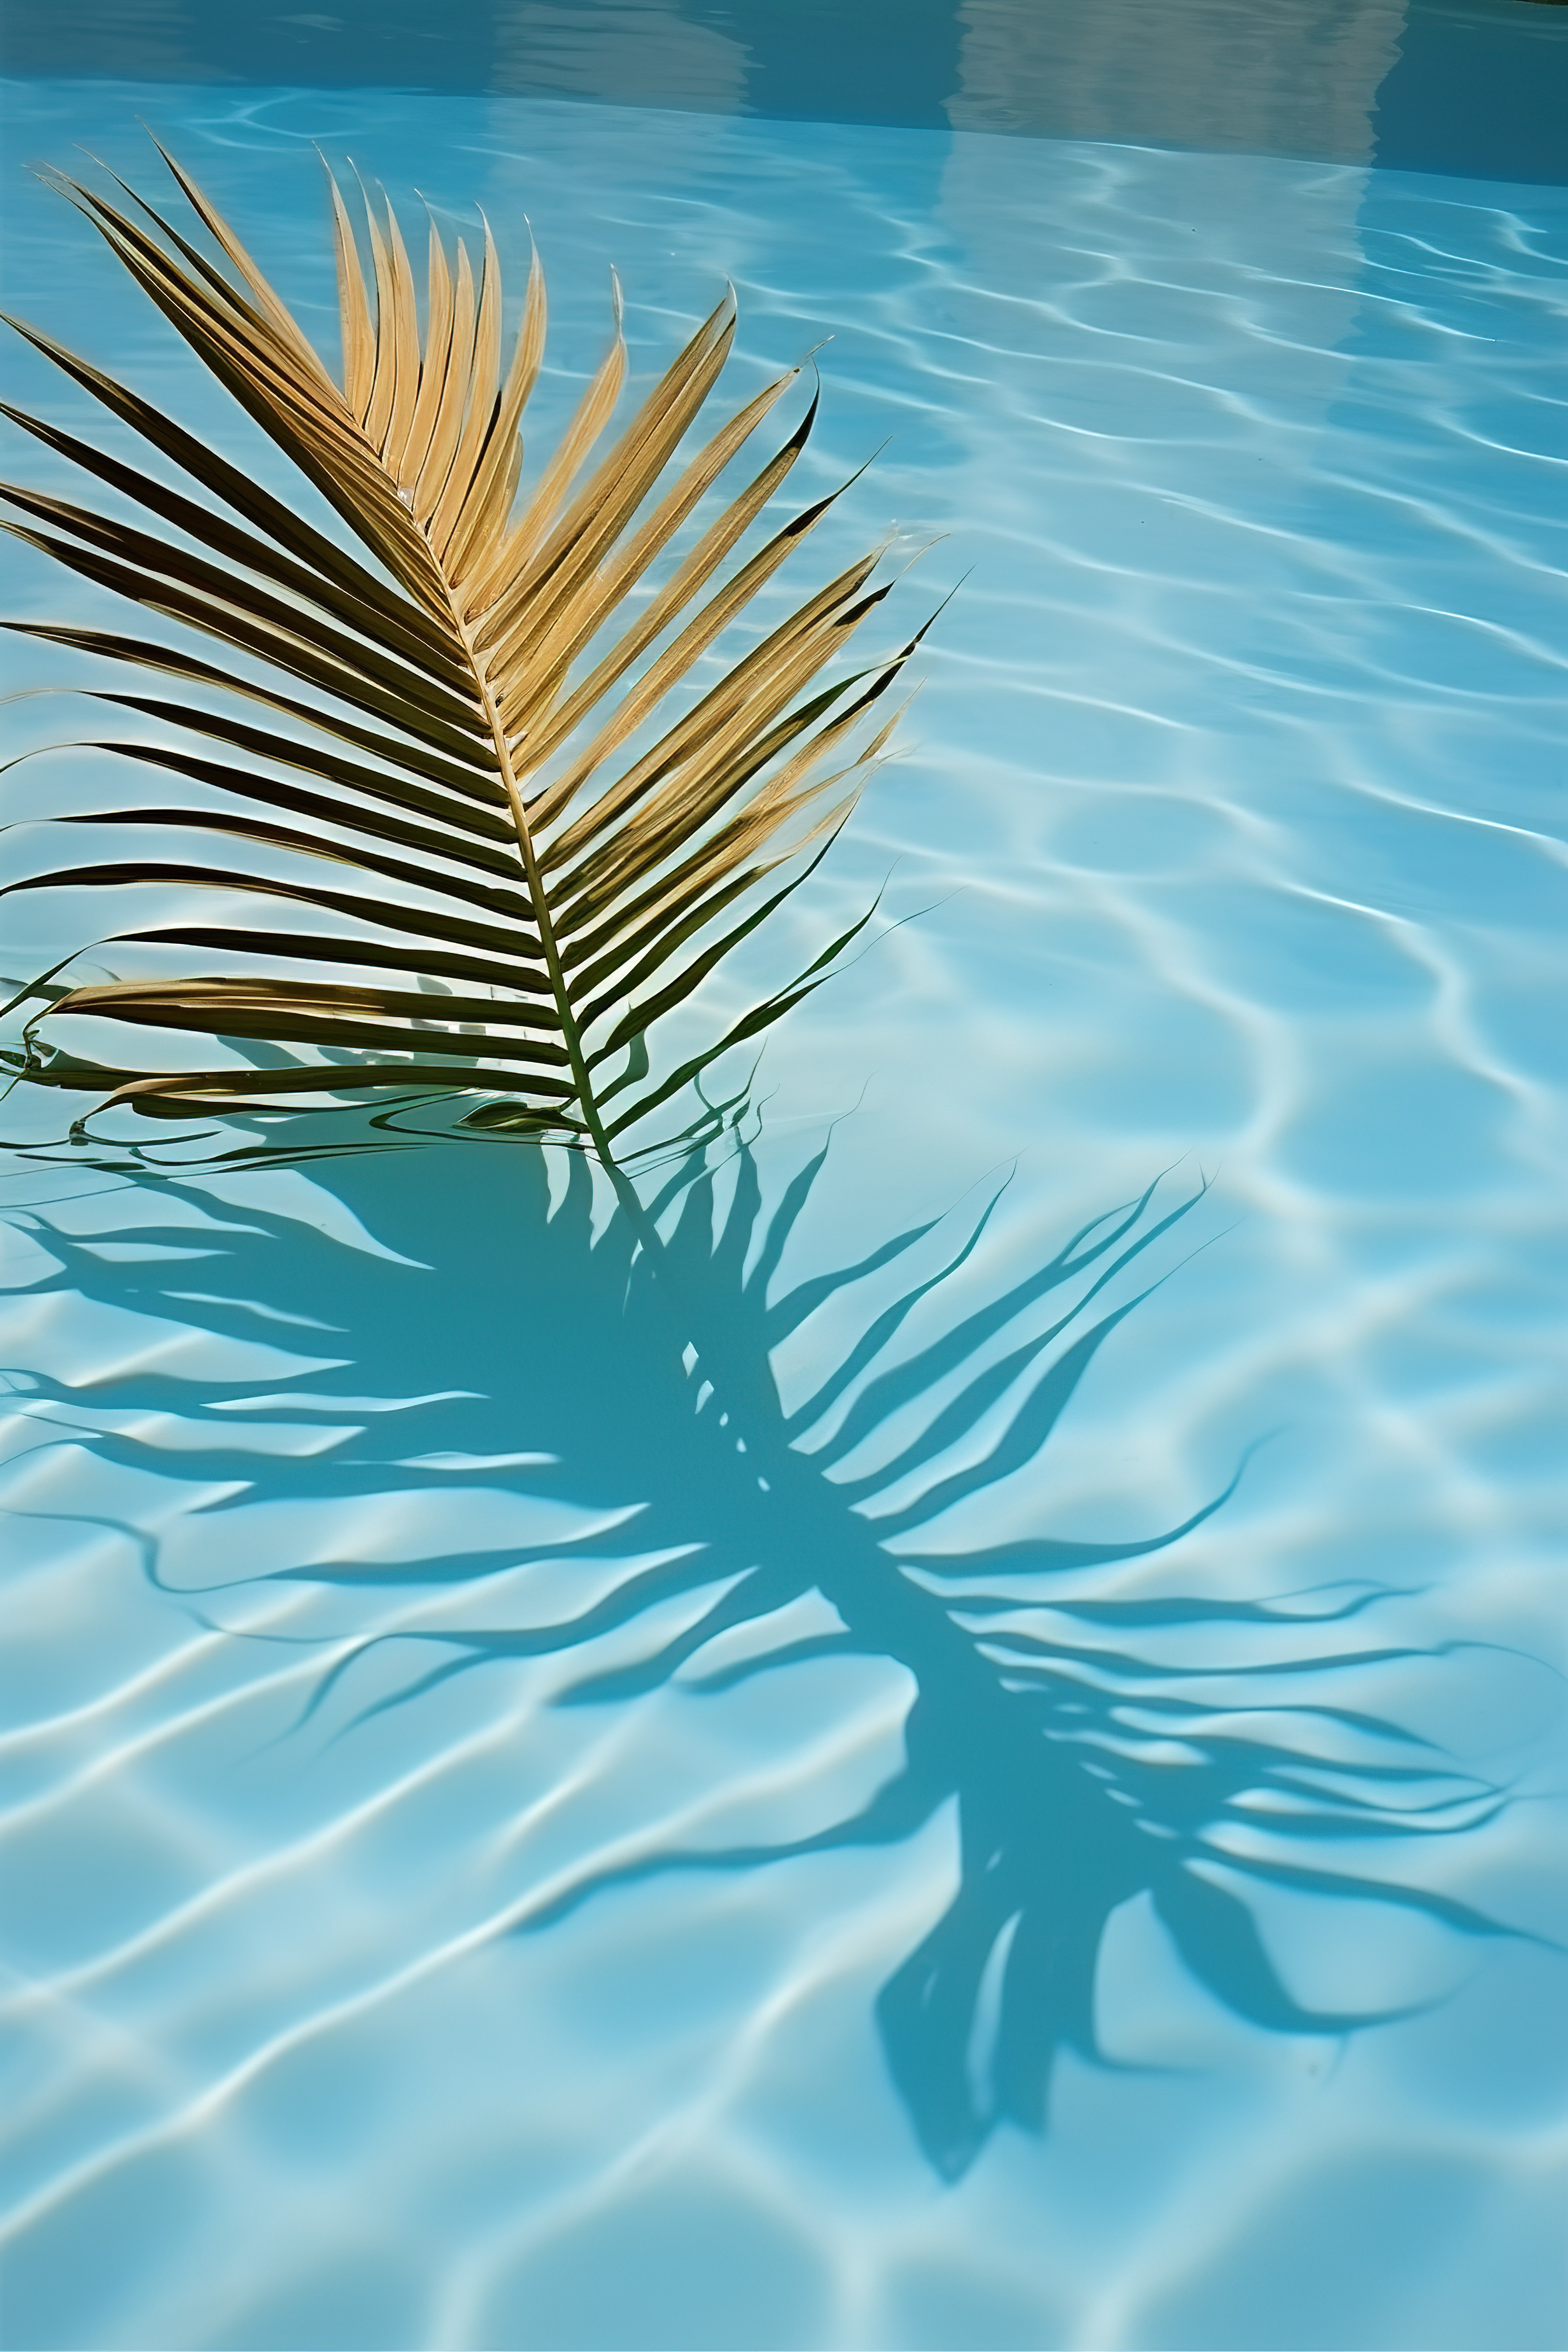 棕榈树的影子在水池中图片